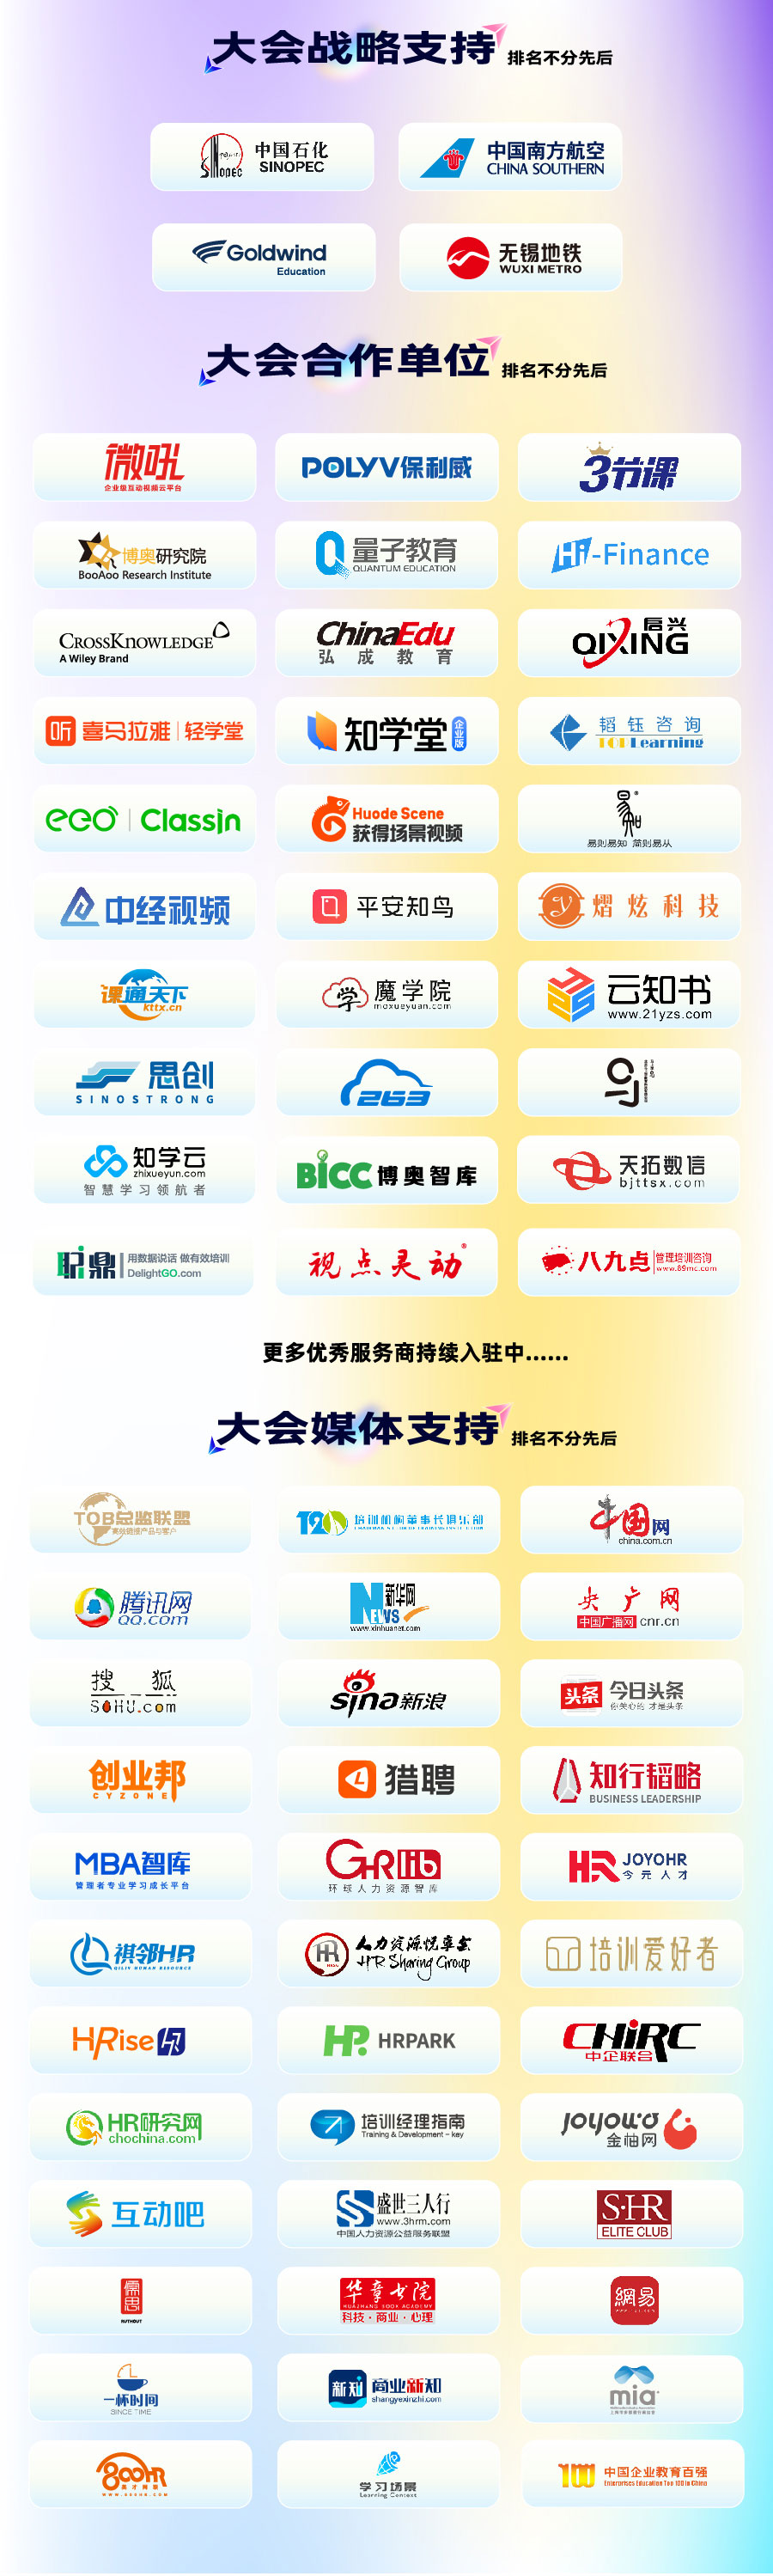 数字有回声，智胜元未来-第14届中国企业数字化学习与人才大会